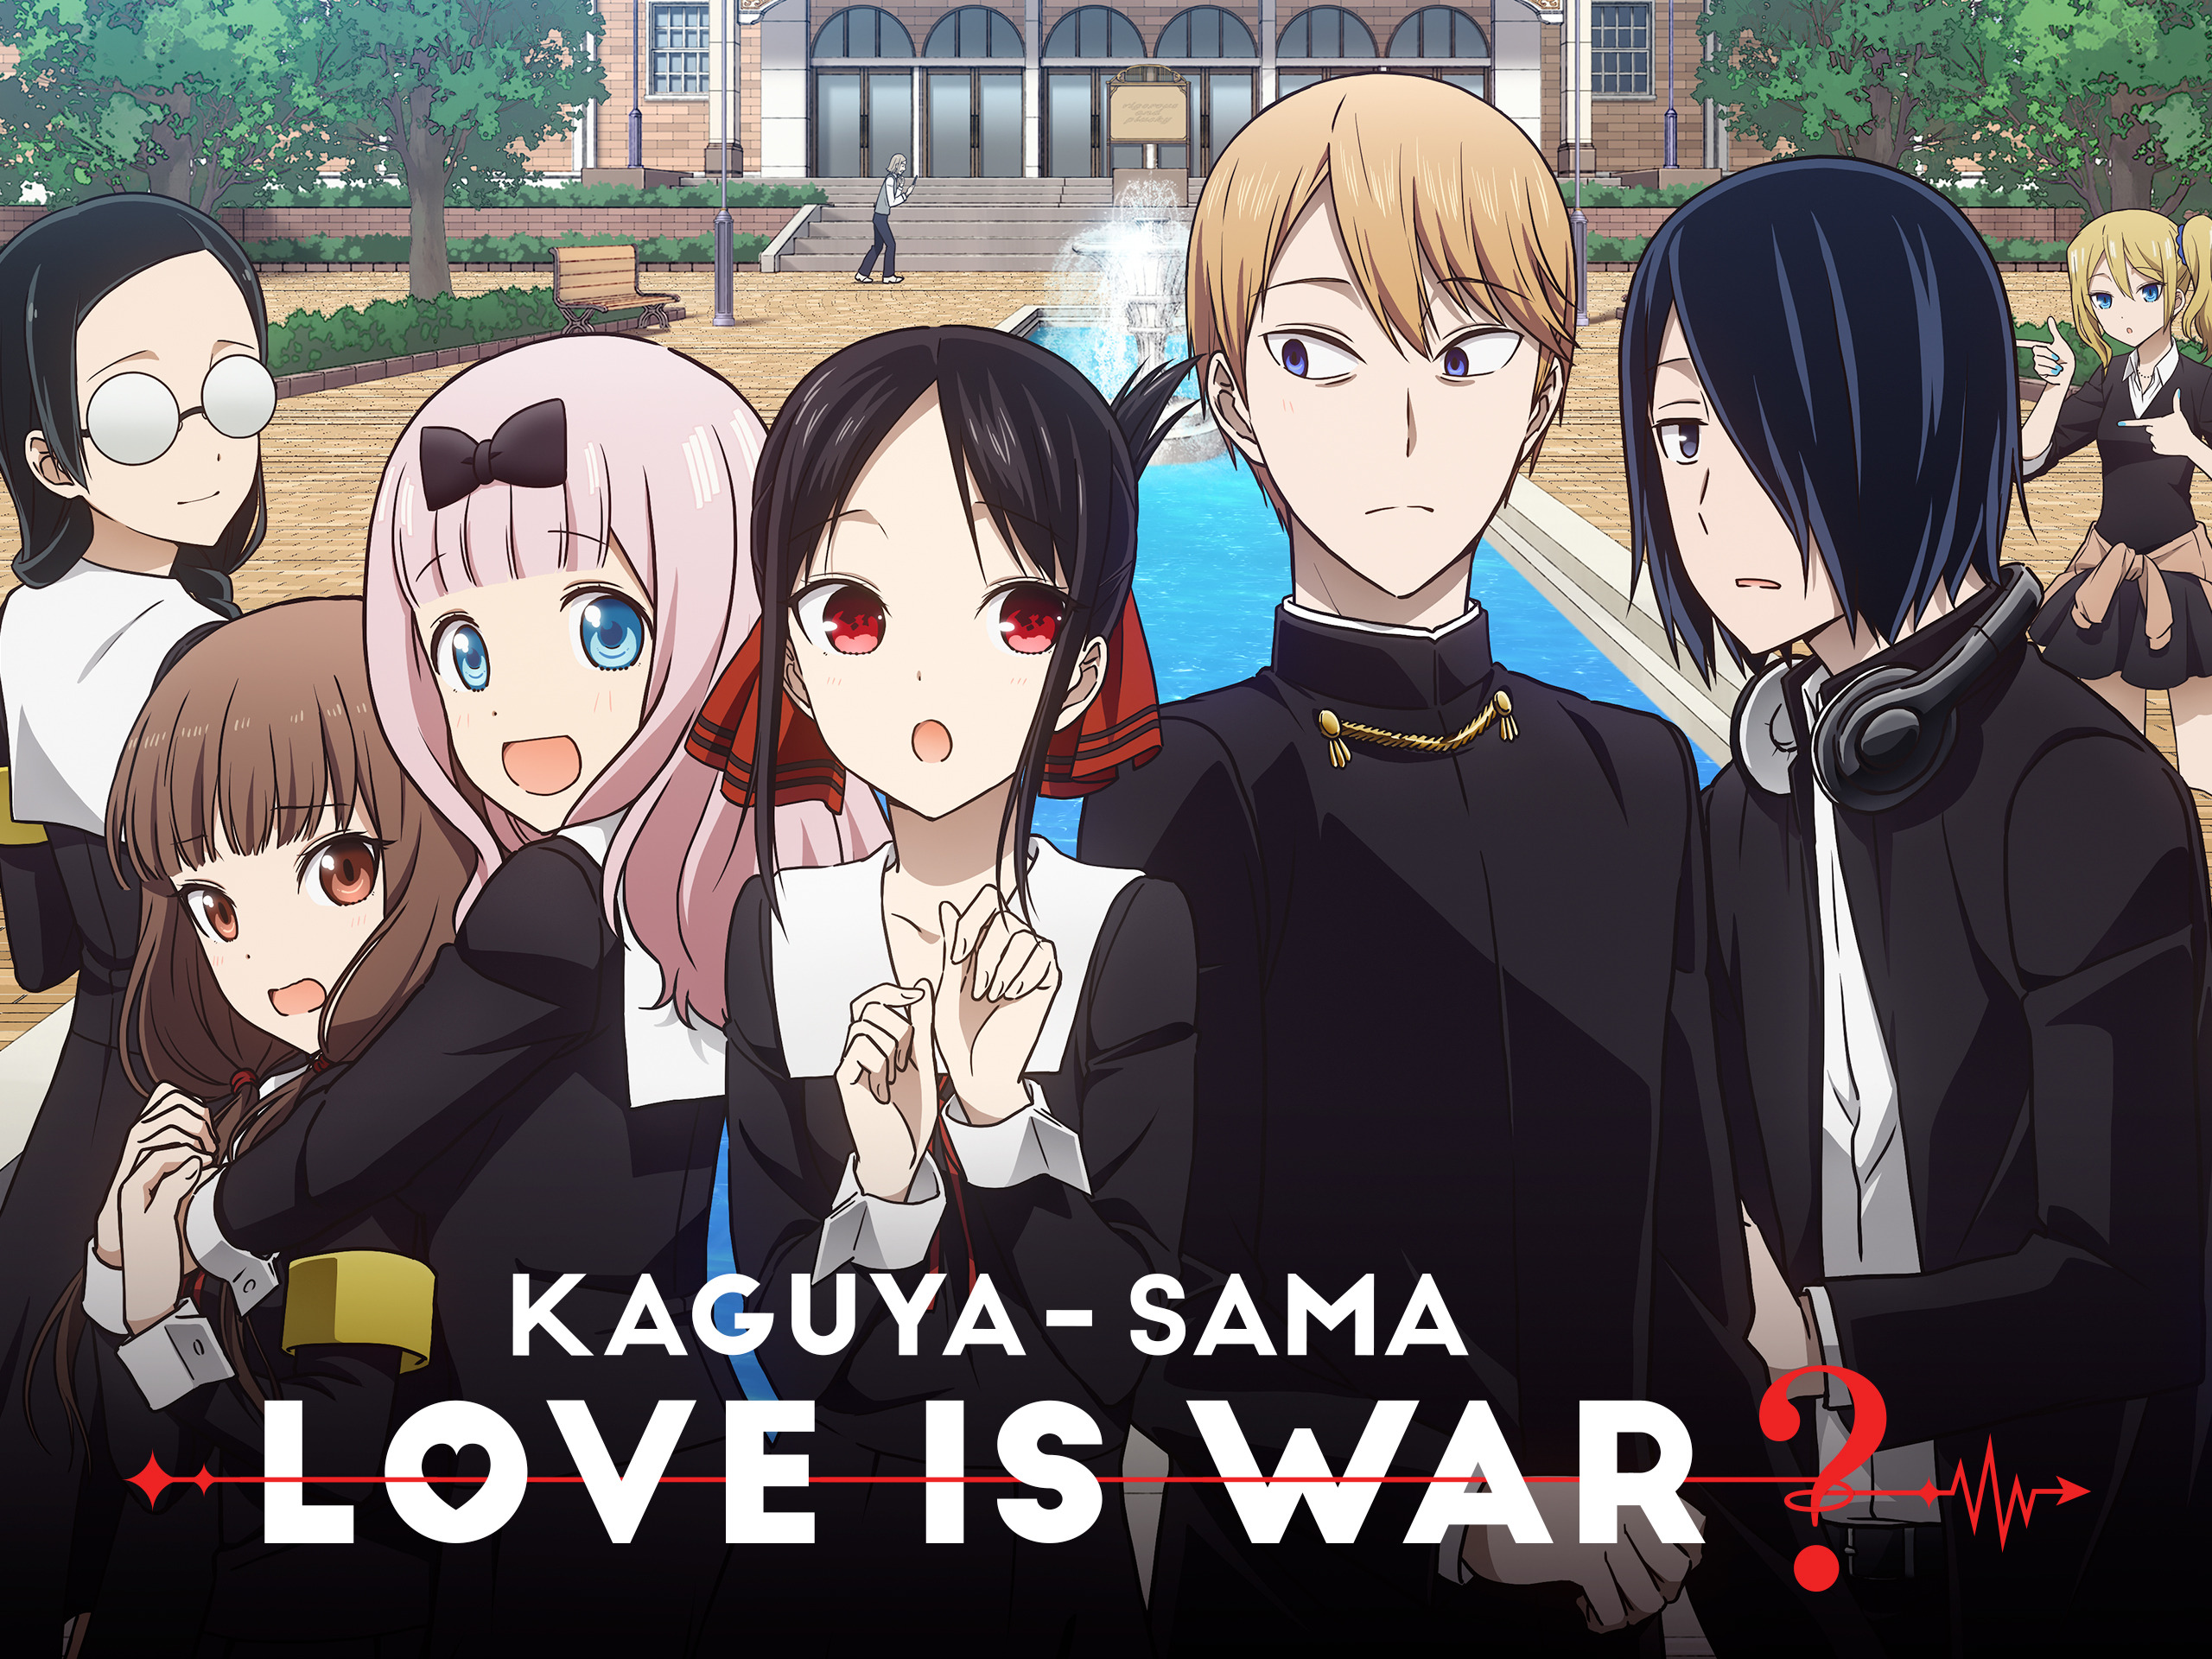 Kaguya-sama Love Is War